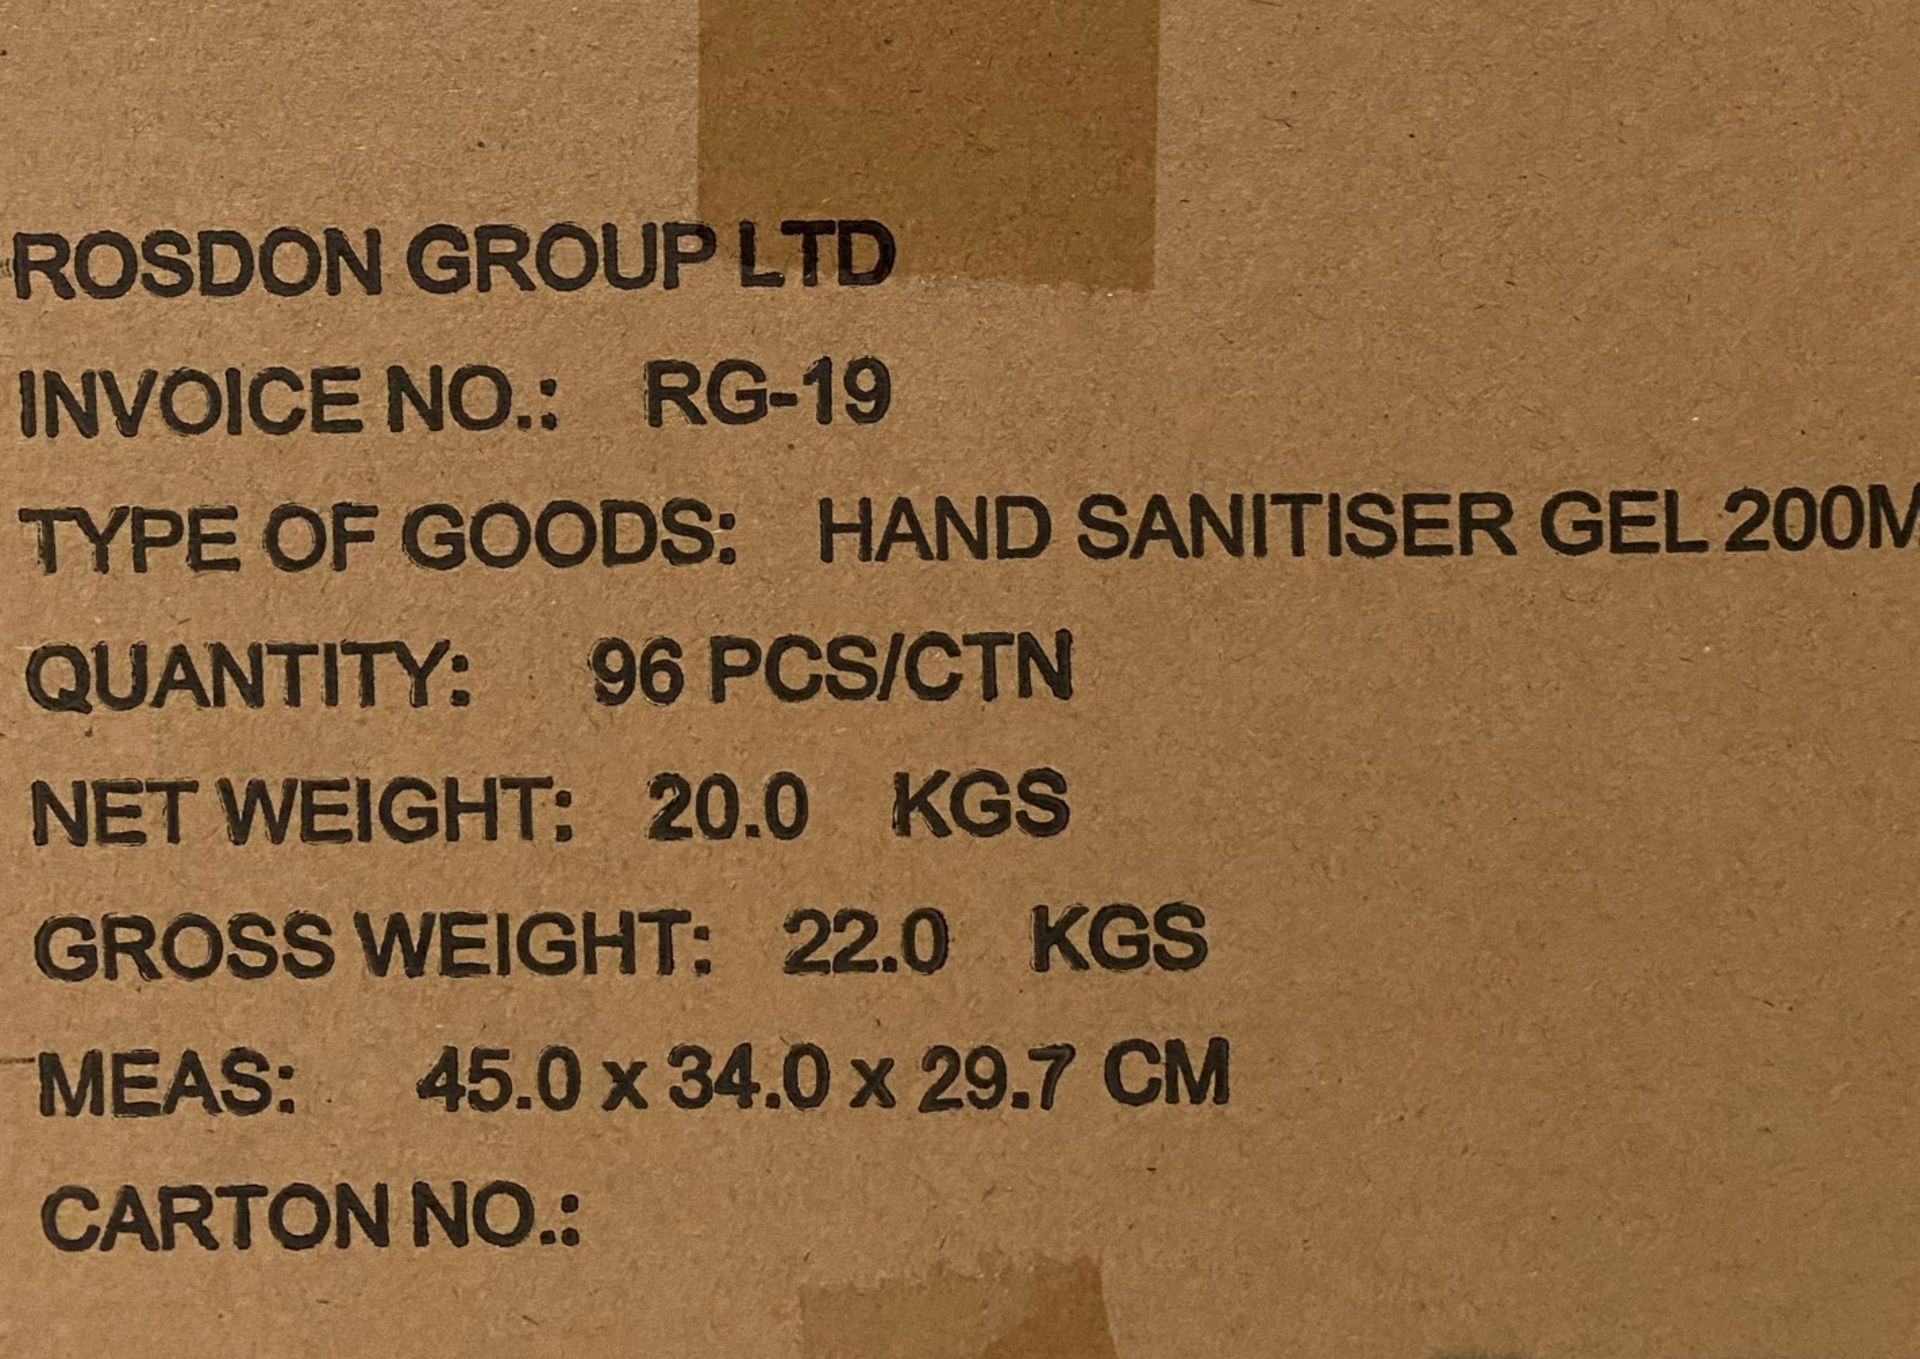 96 x 200ml flip top bottles of Rosdon Group UK hand sanitiser - 1 outer box. - Image 5 of 13